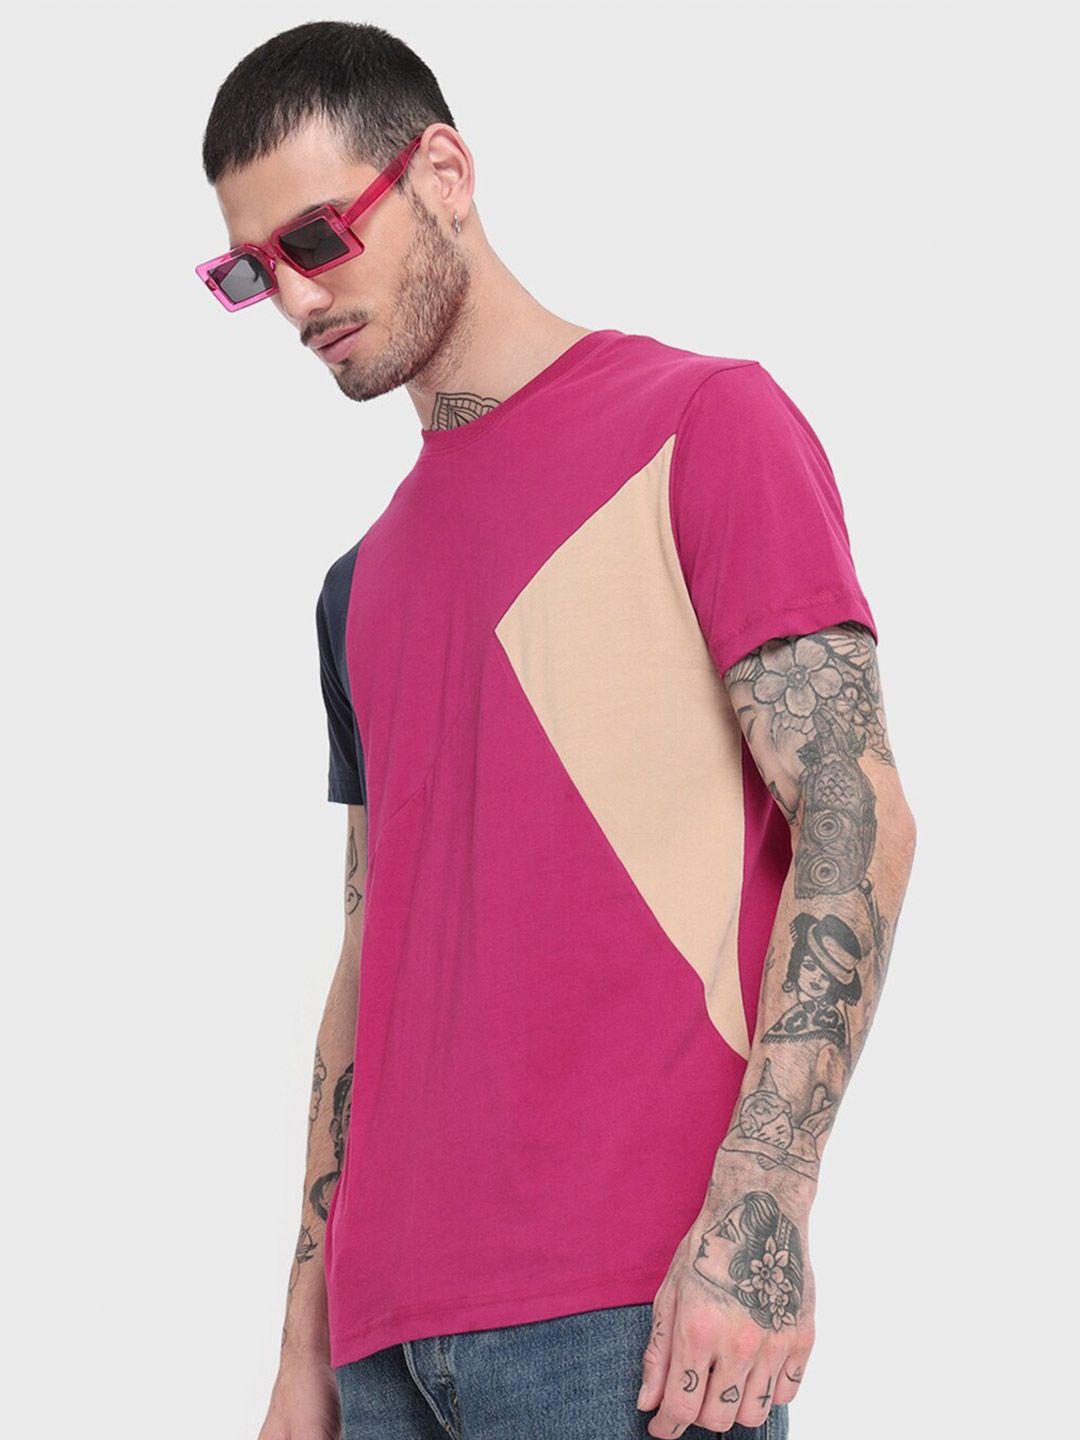 bewakoof-men-pink-colourblocked-t-shirt